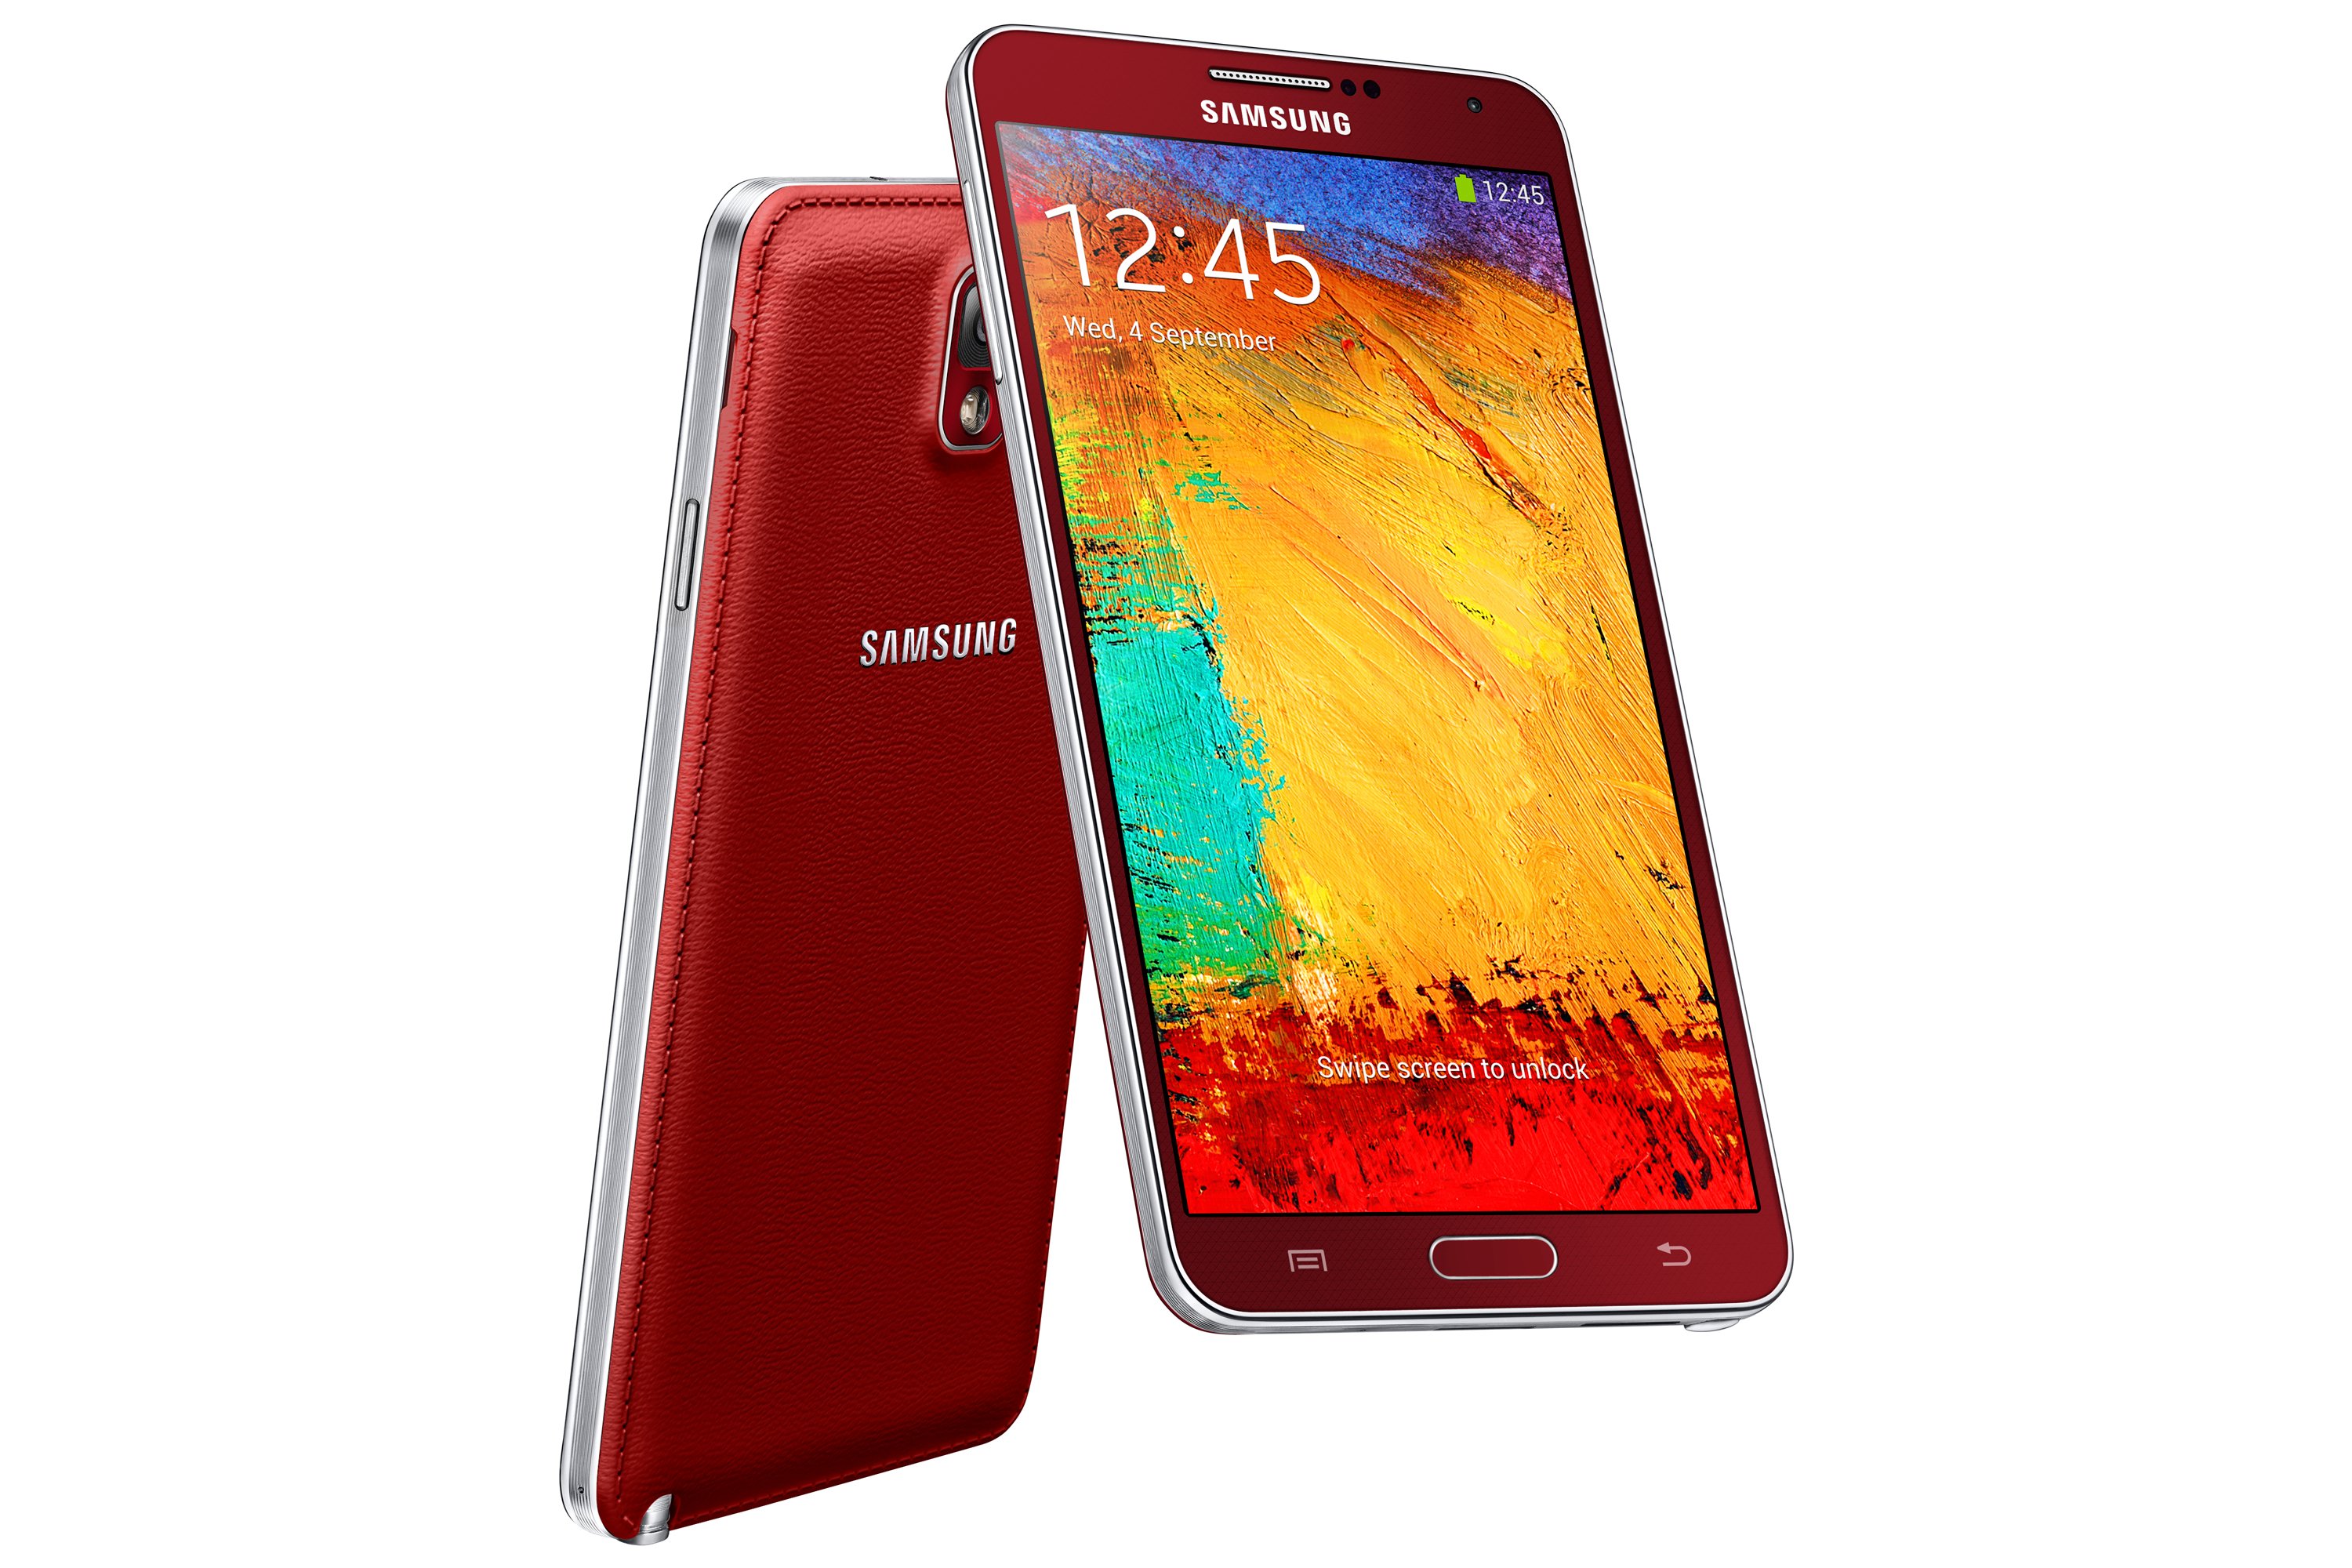 Samsung N7505 Galaxy Note